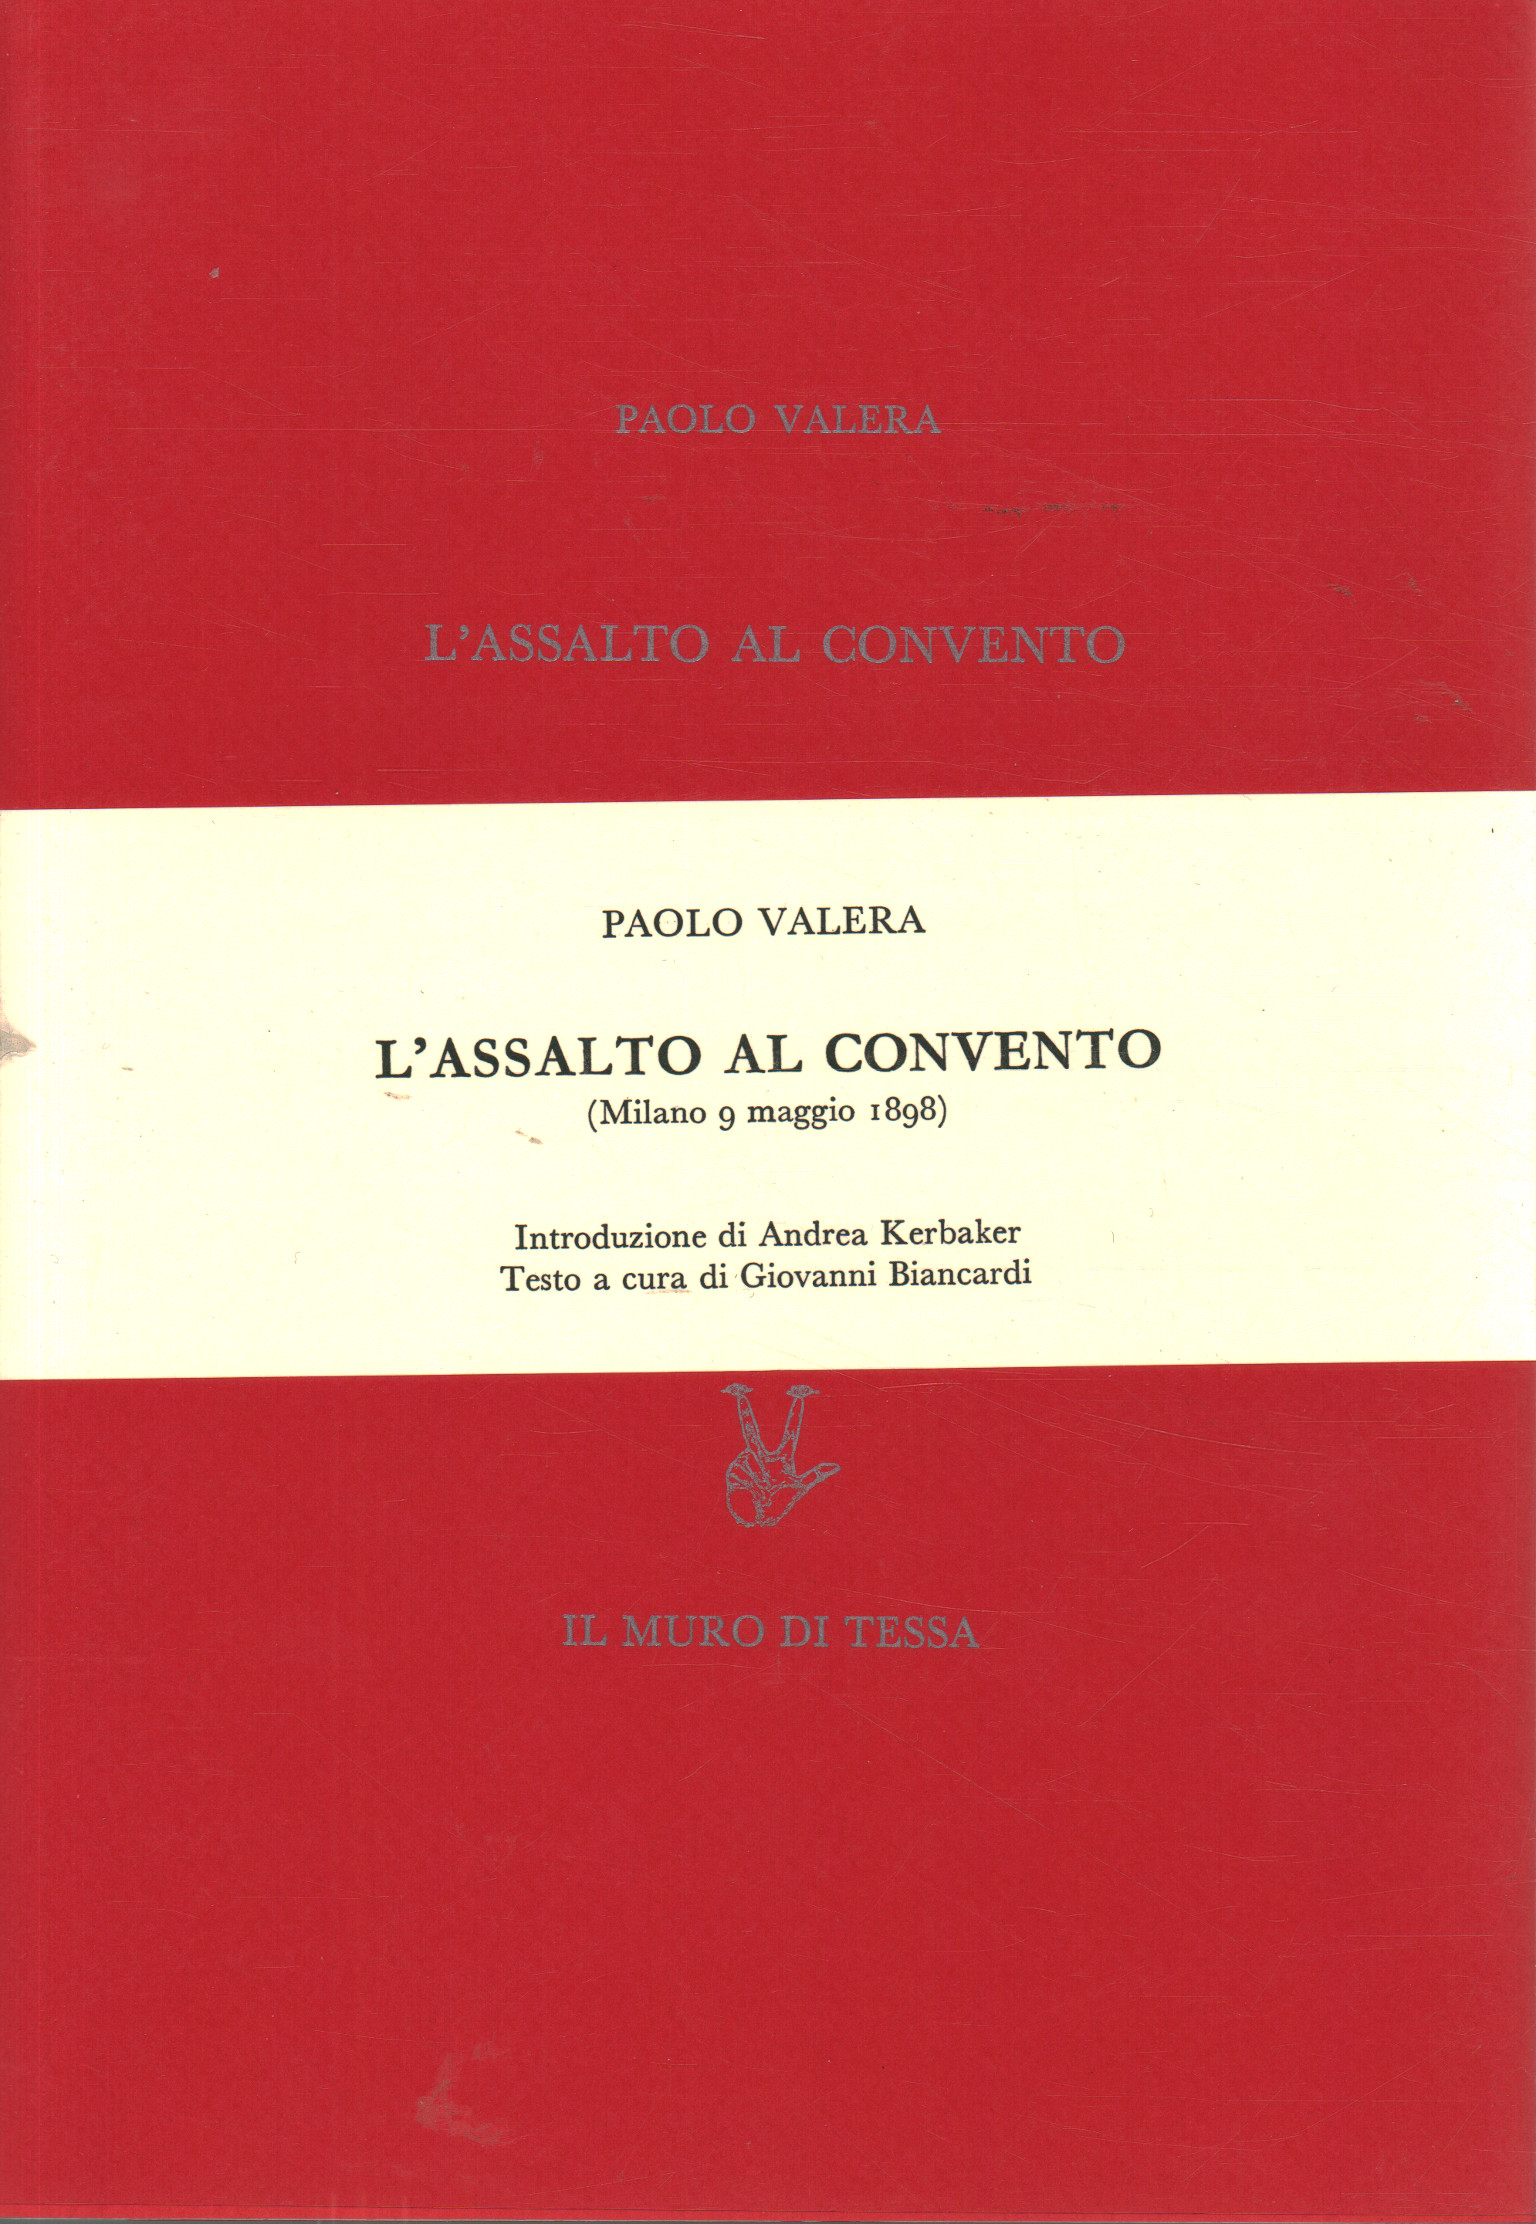 L'assalto al convento (Milano 9 maggio 1898), Paolo Valera